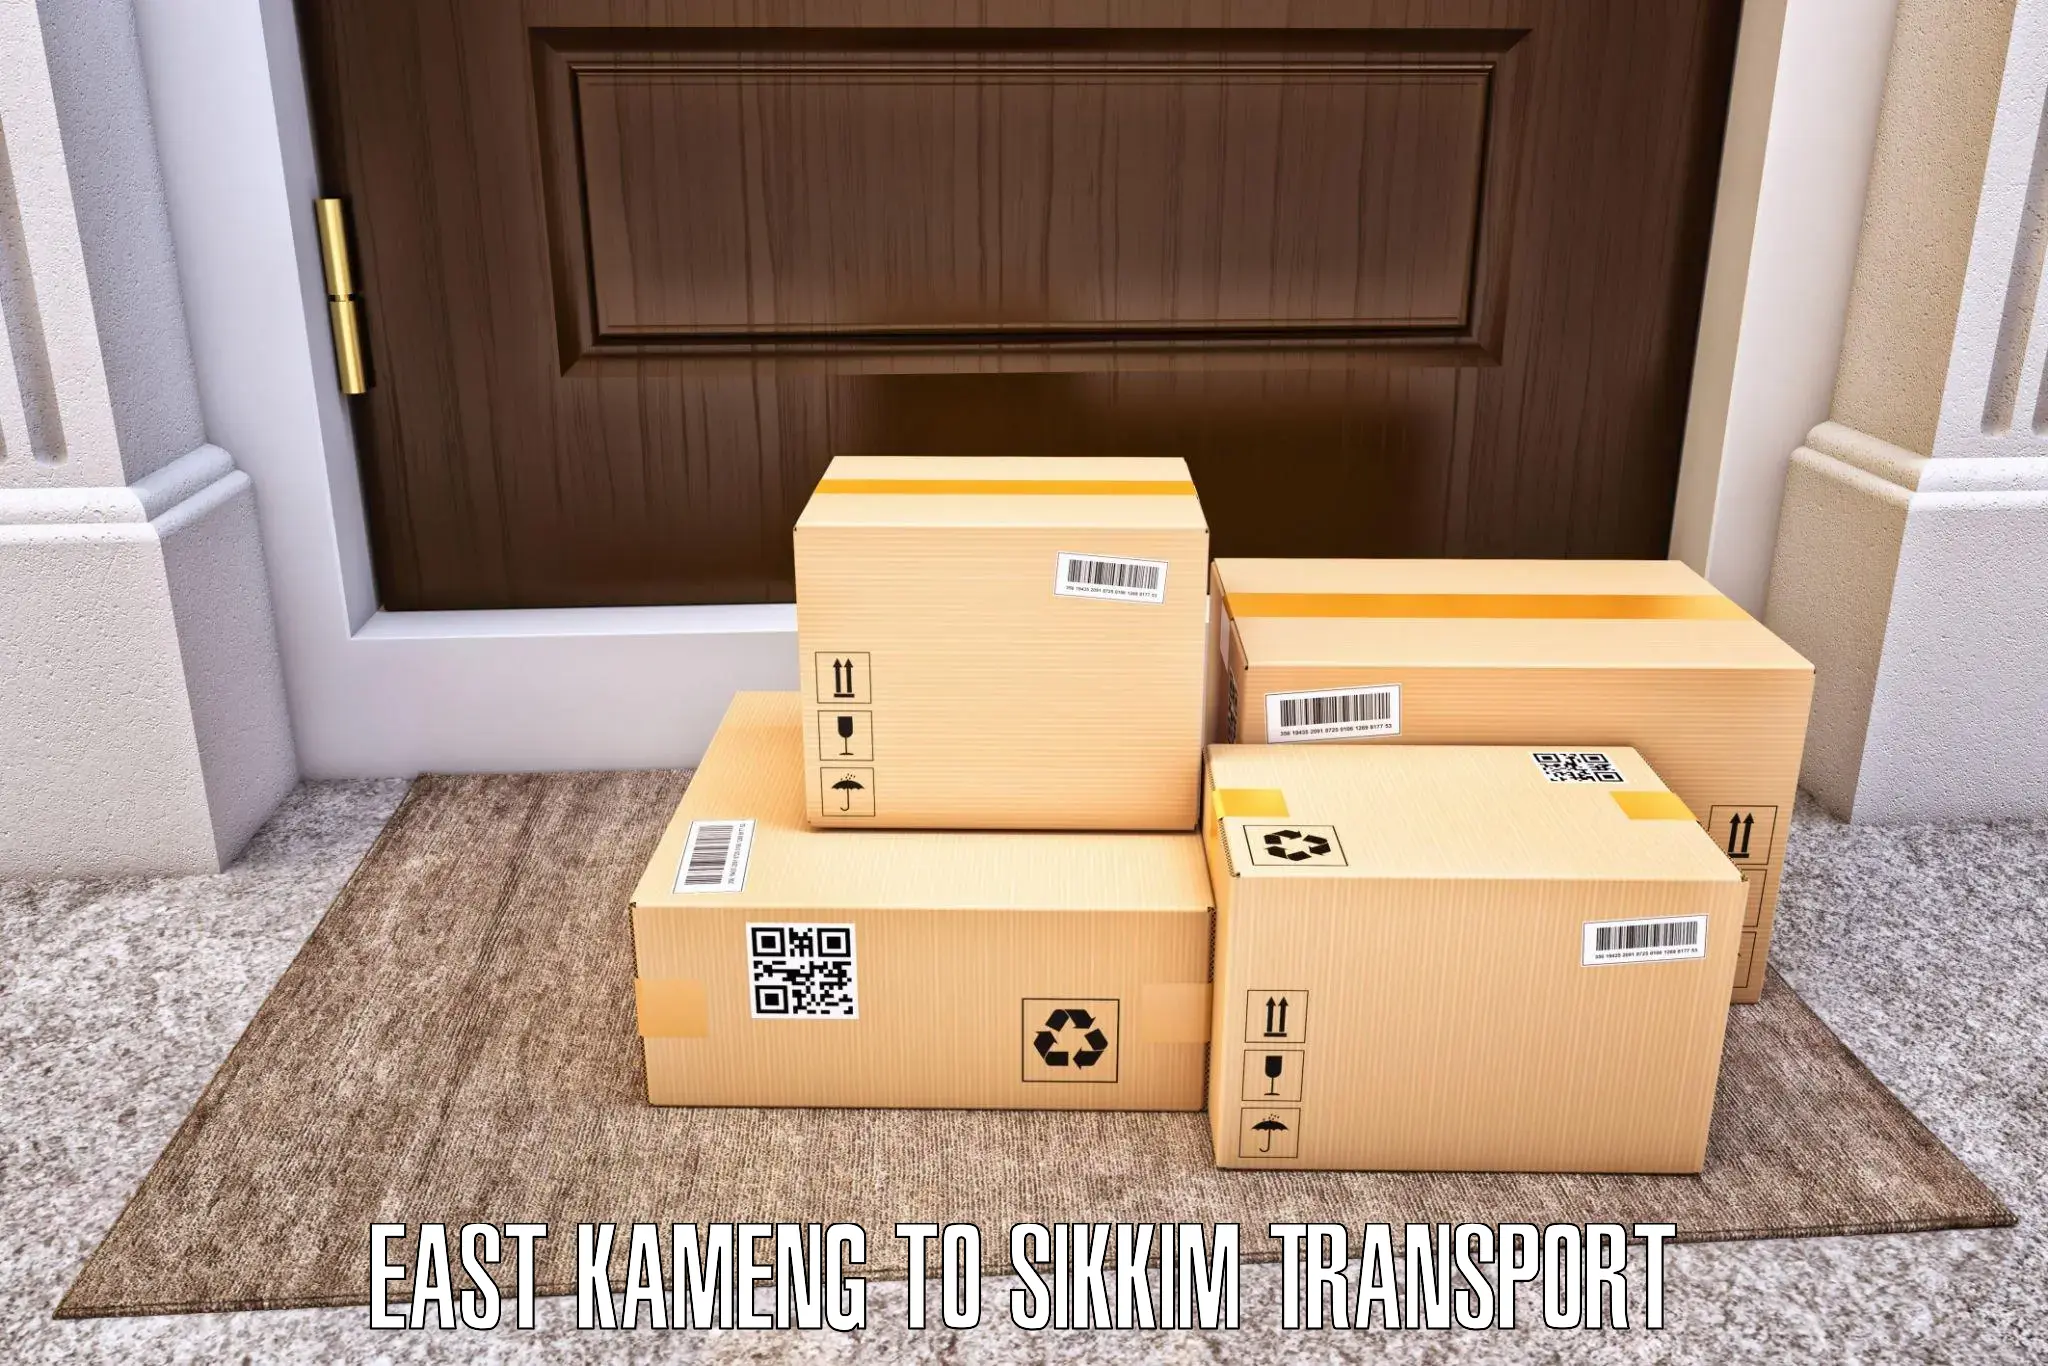 Online transport service East Kameng to Sikkim